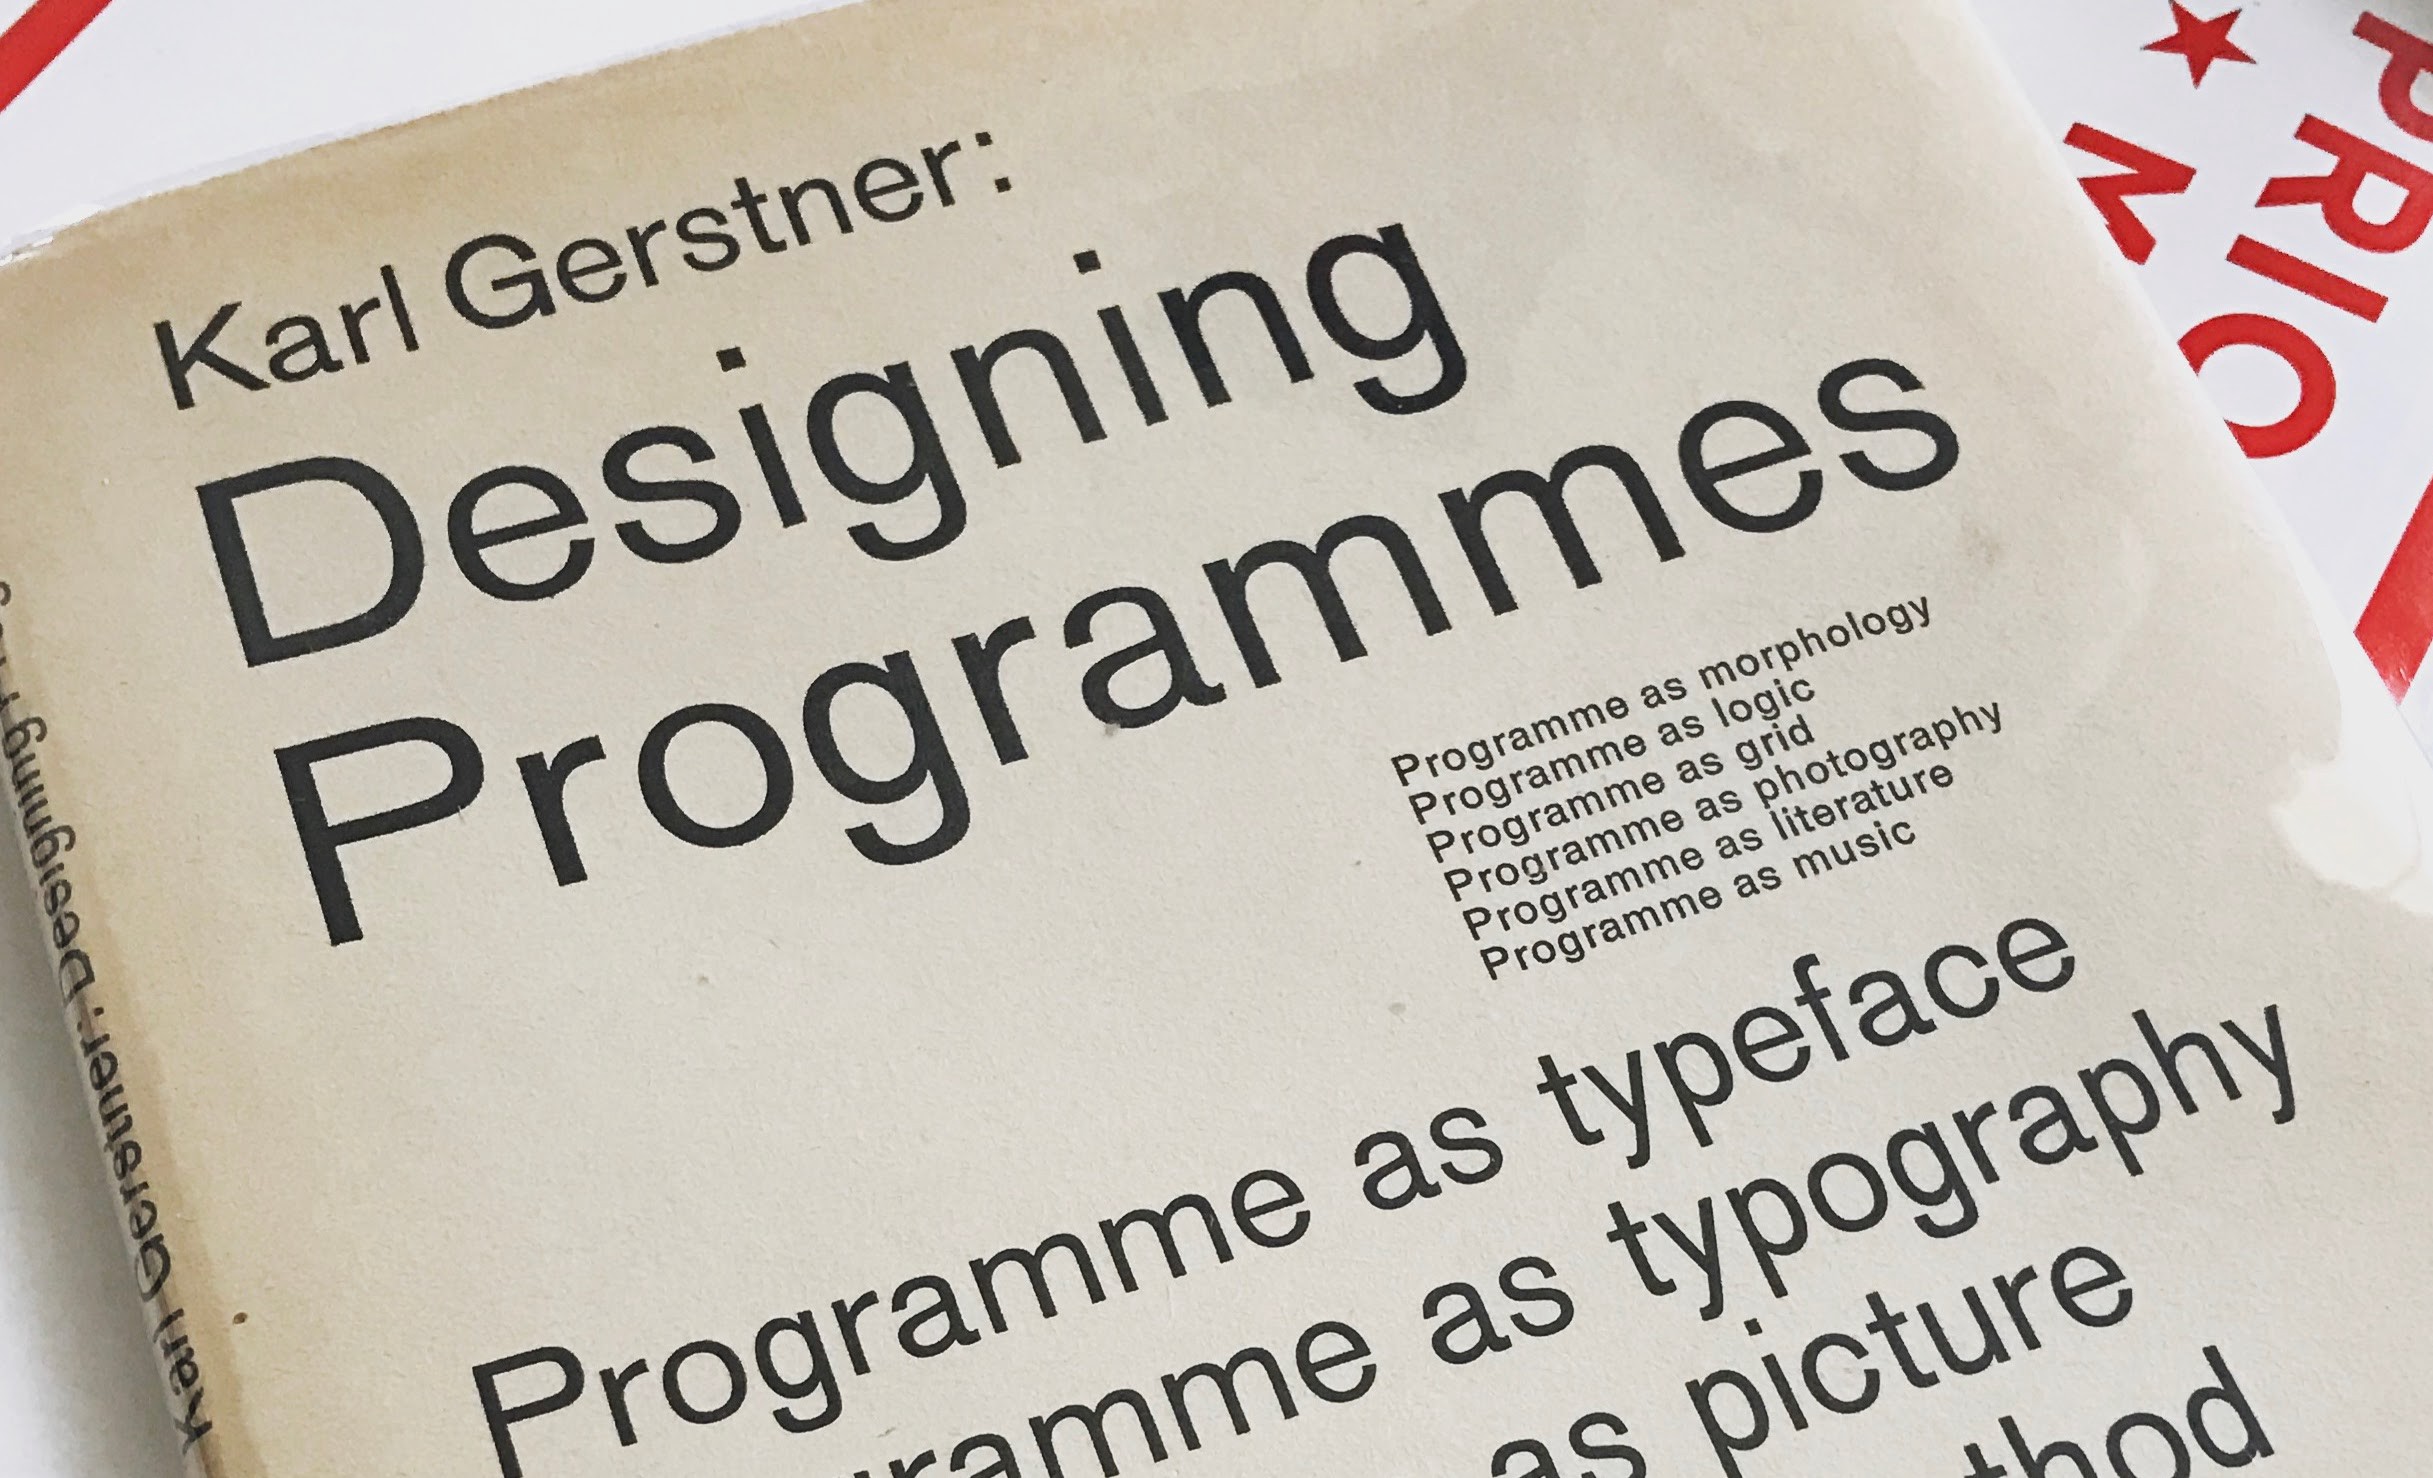 Karl gerstner designing programmes pdf